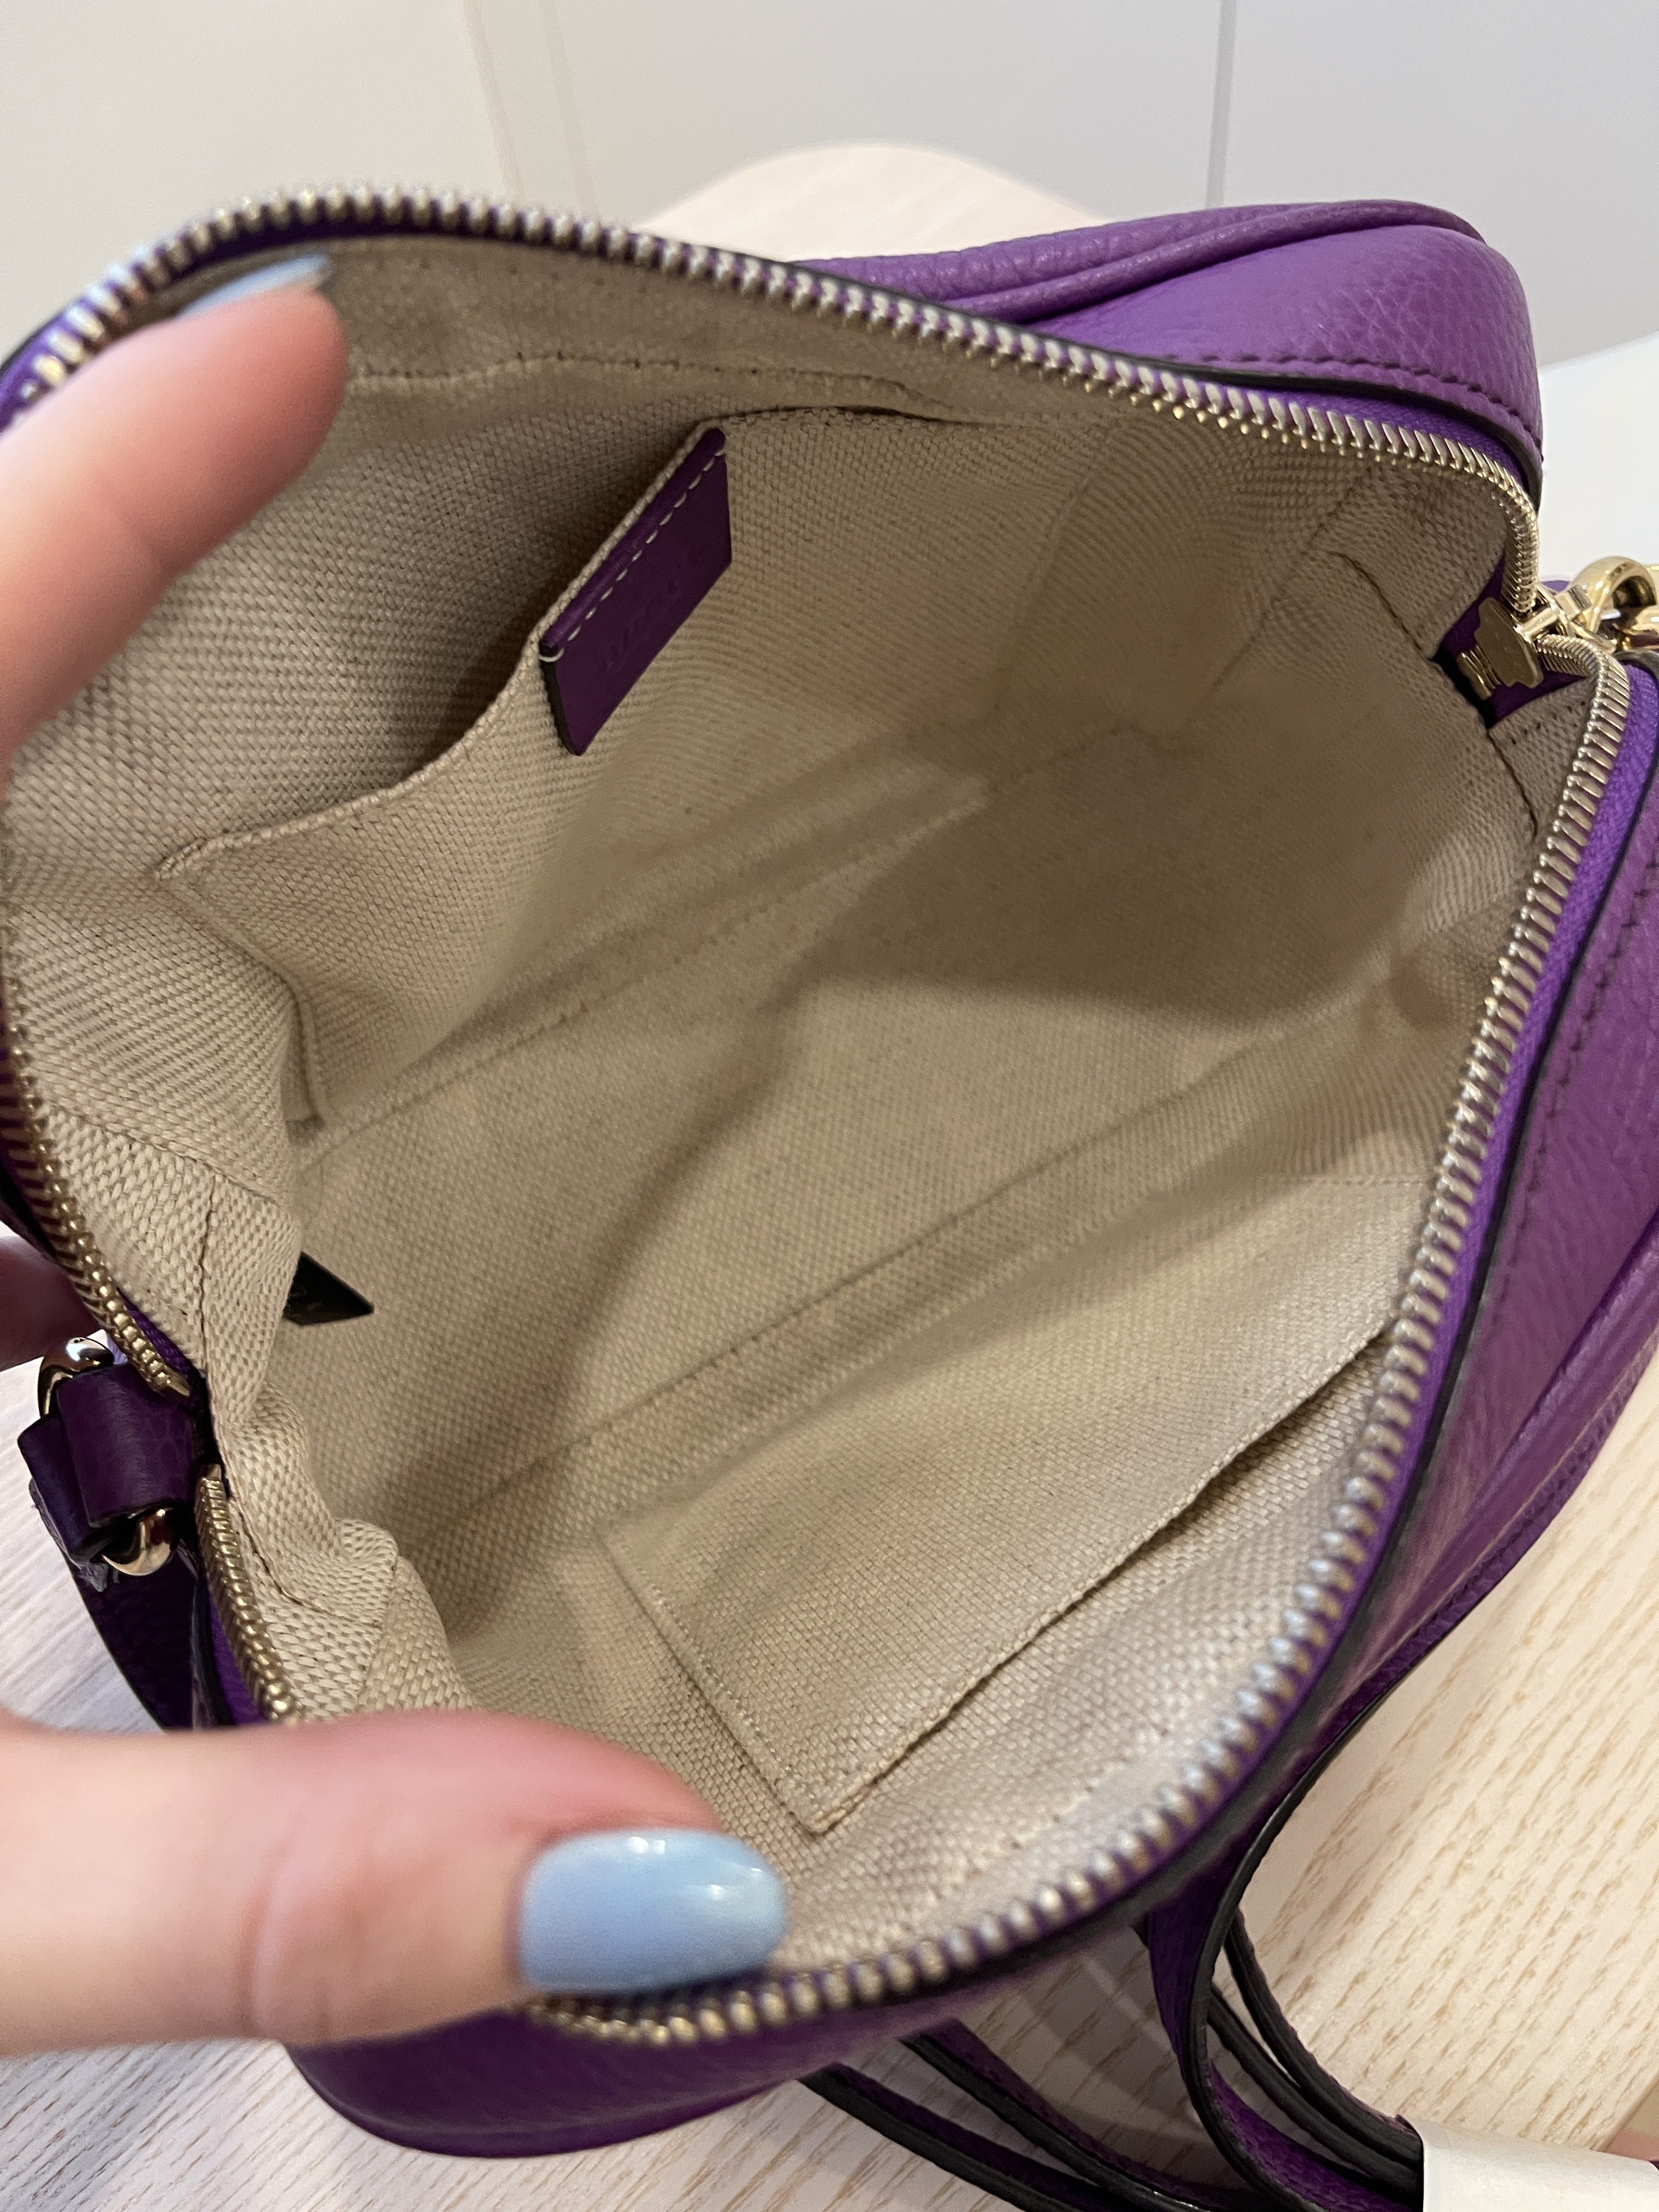 Gucci Soho Disco Purple Leather Bag - Klueles shop online